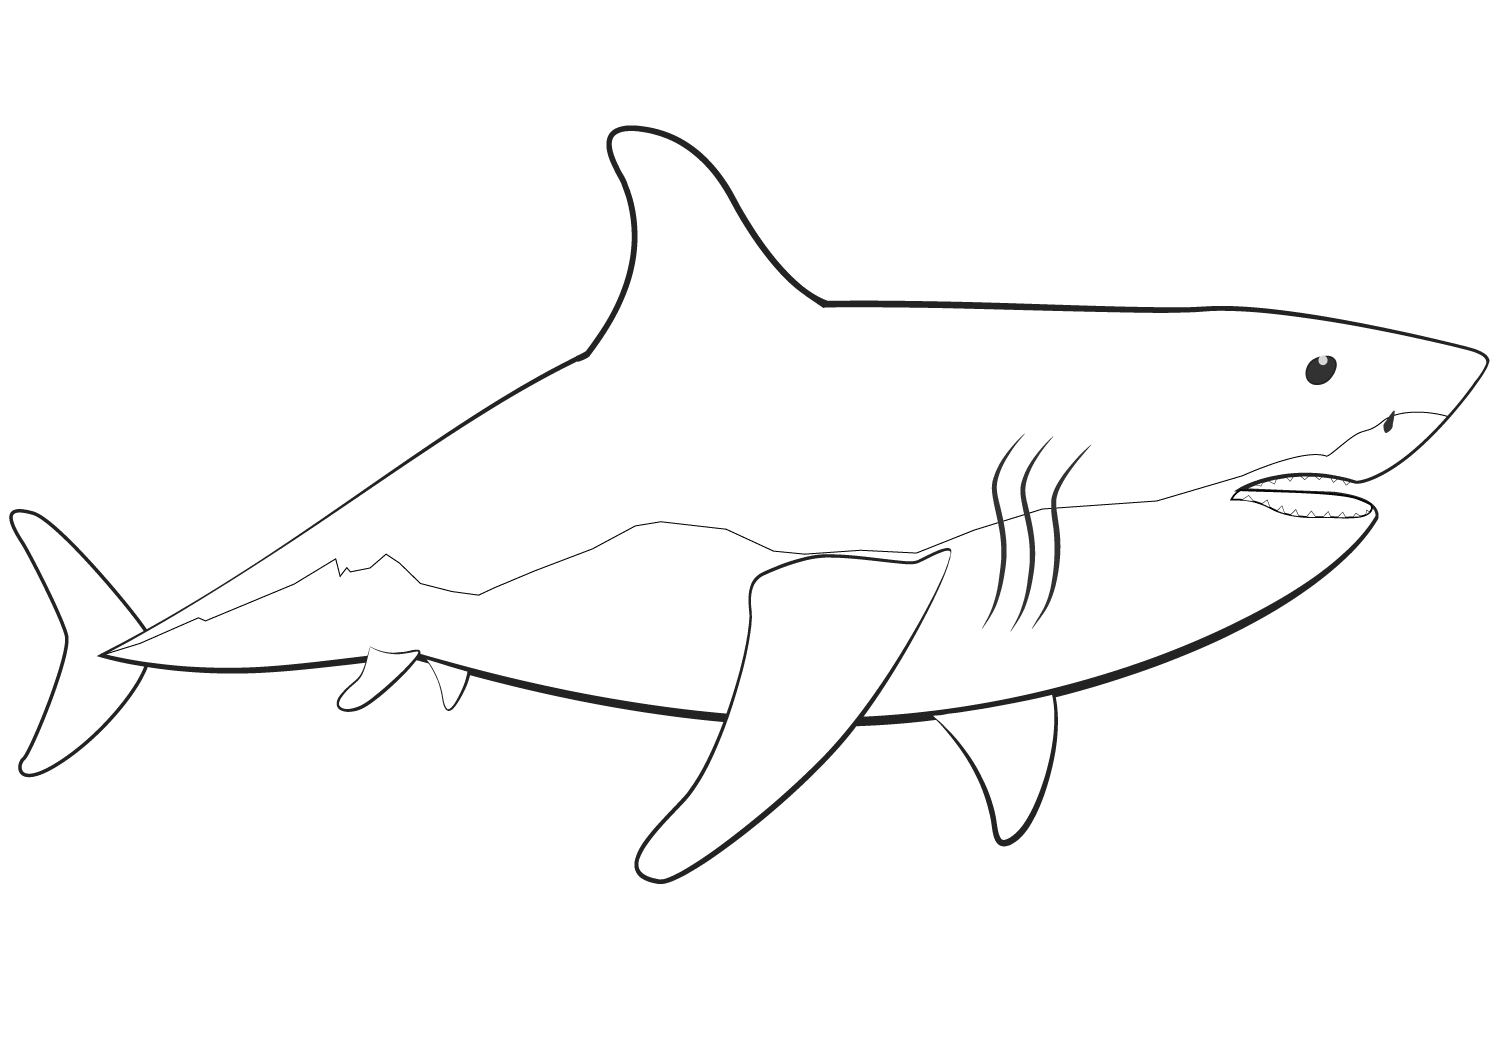 大白鲨的身体形状像鲨鱼的钝鱼雷